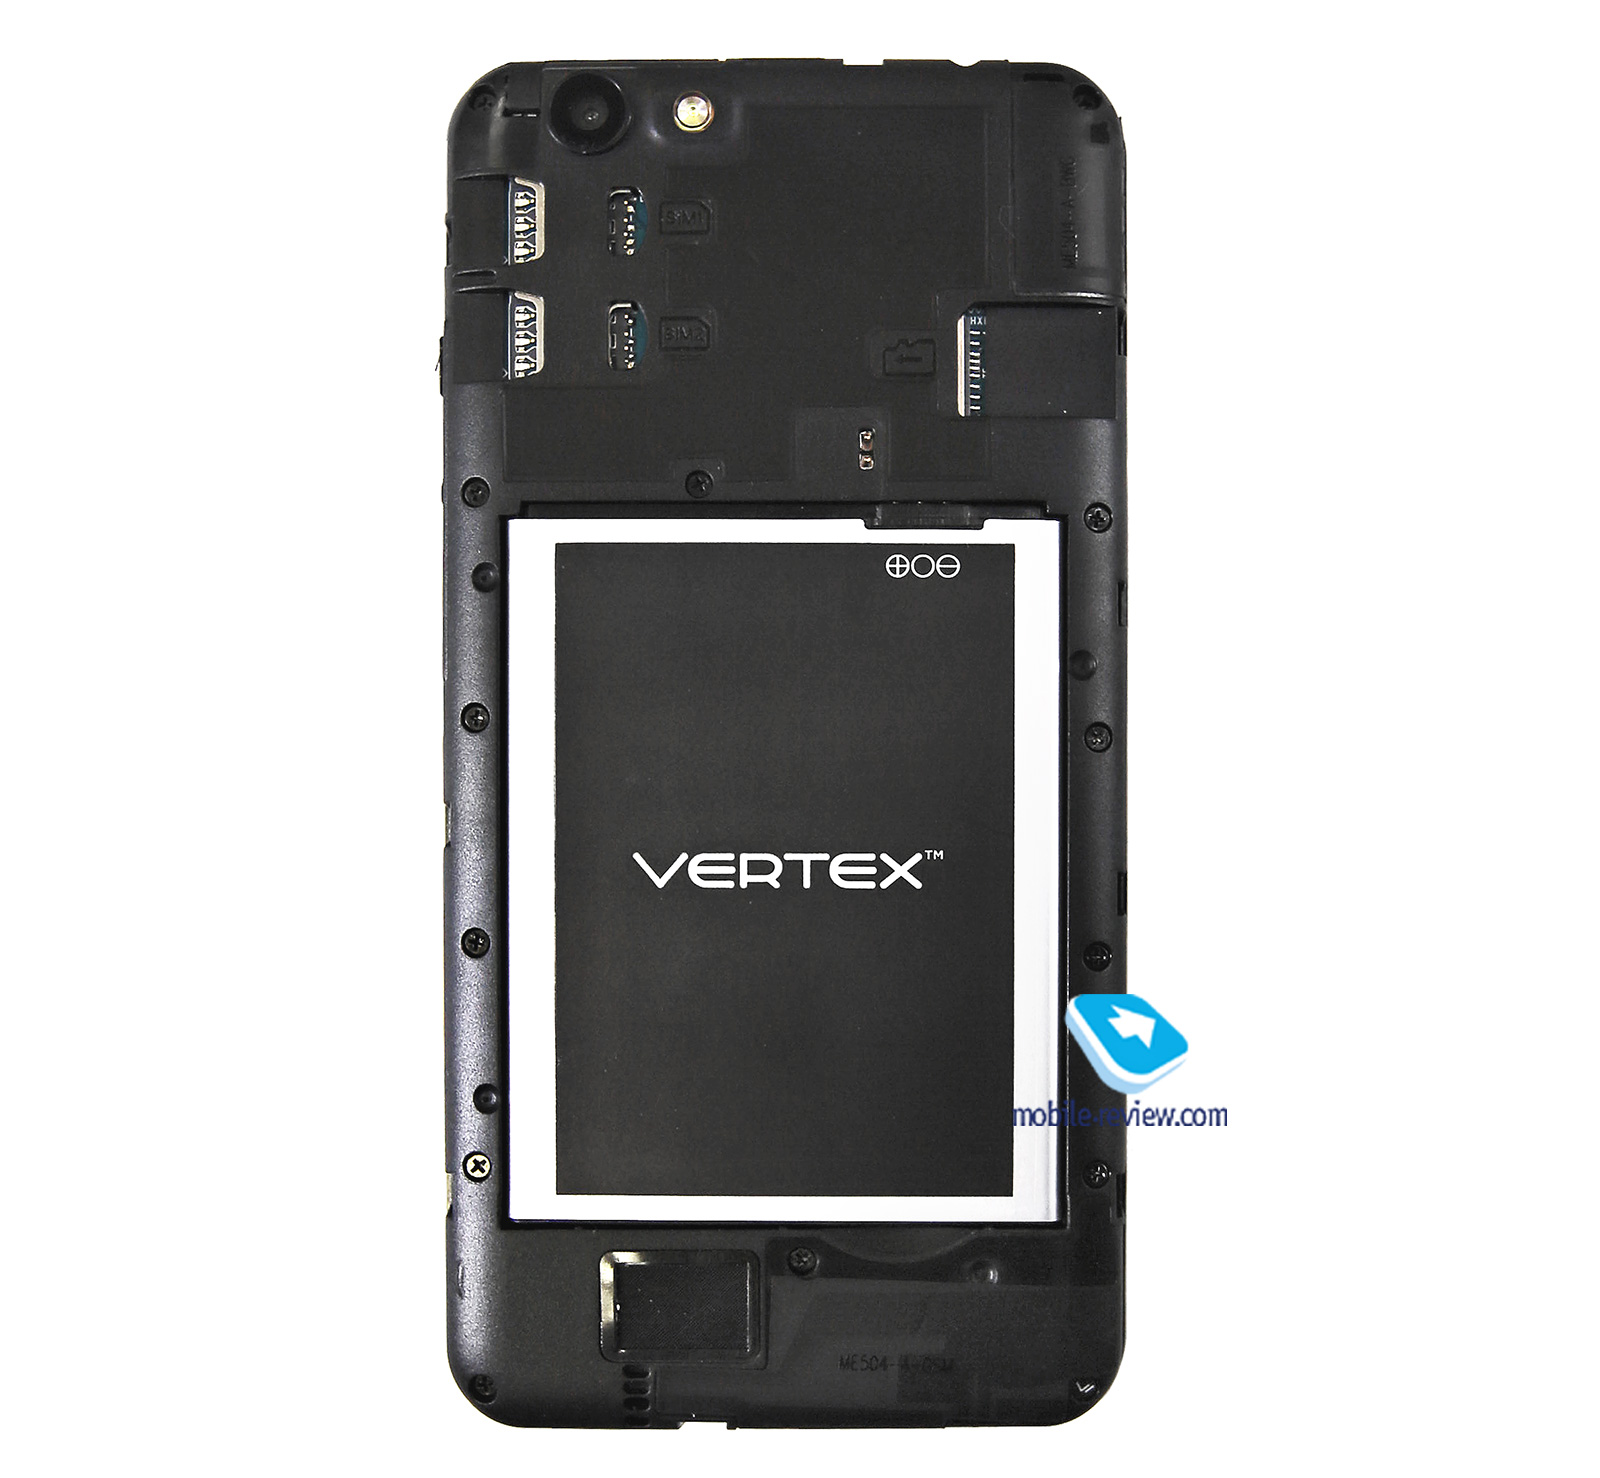 Vertex Impress Luck 4G NFC